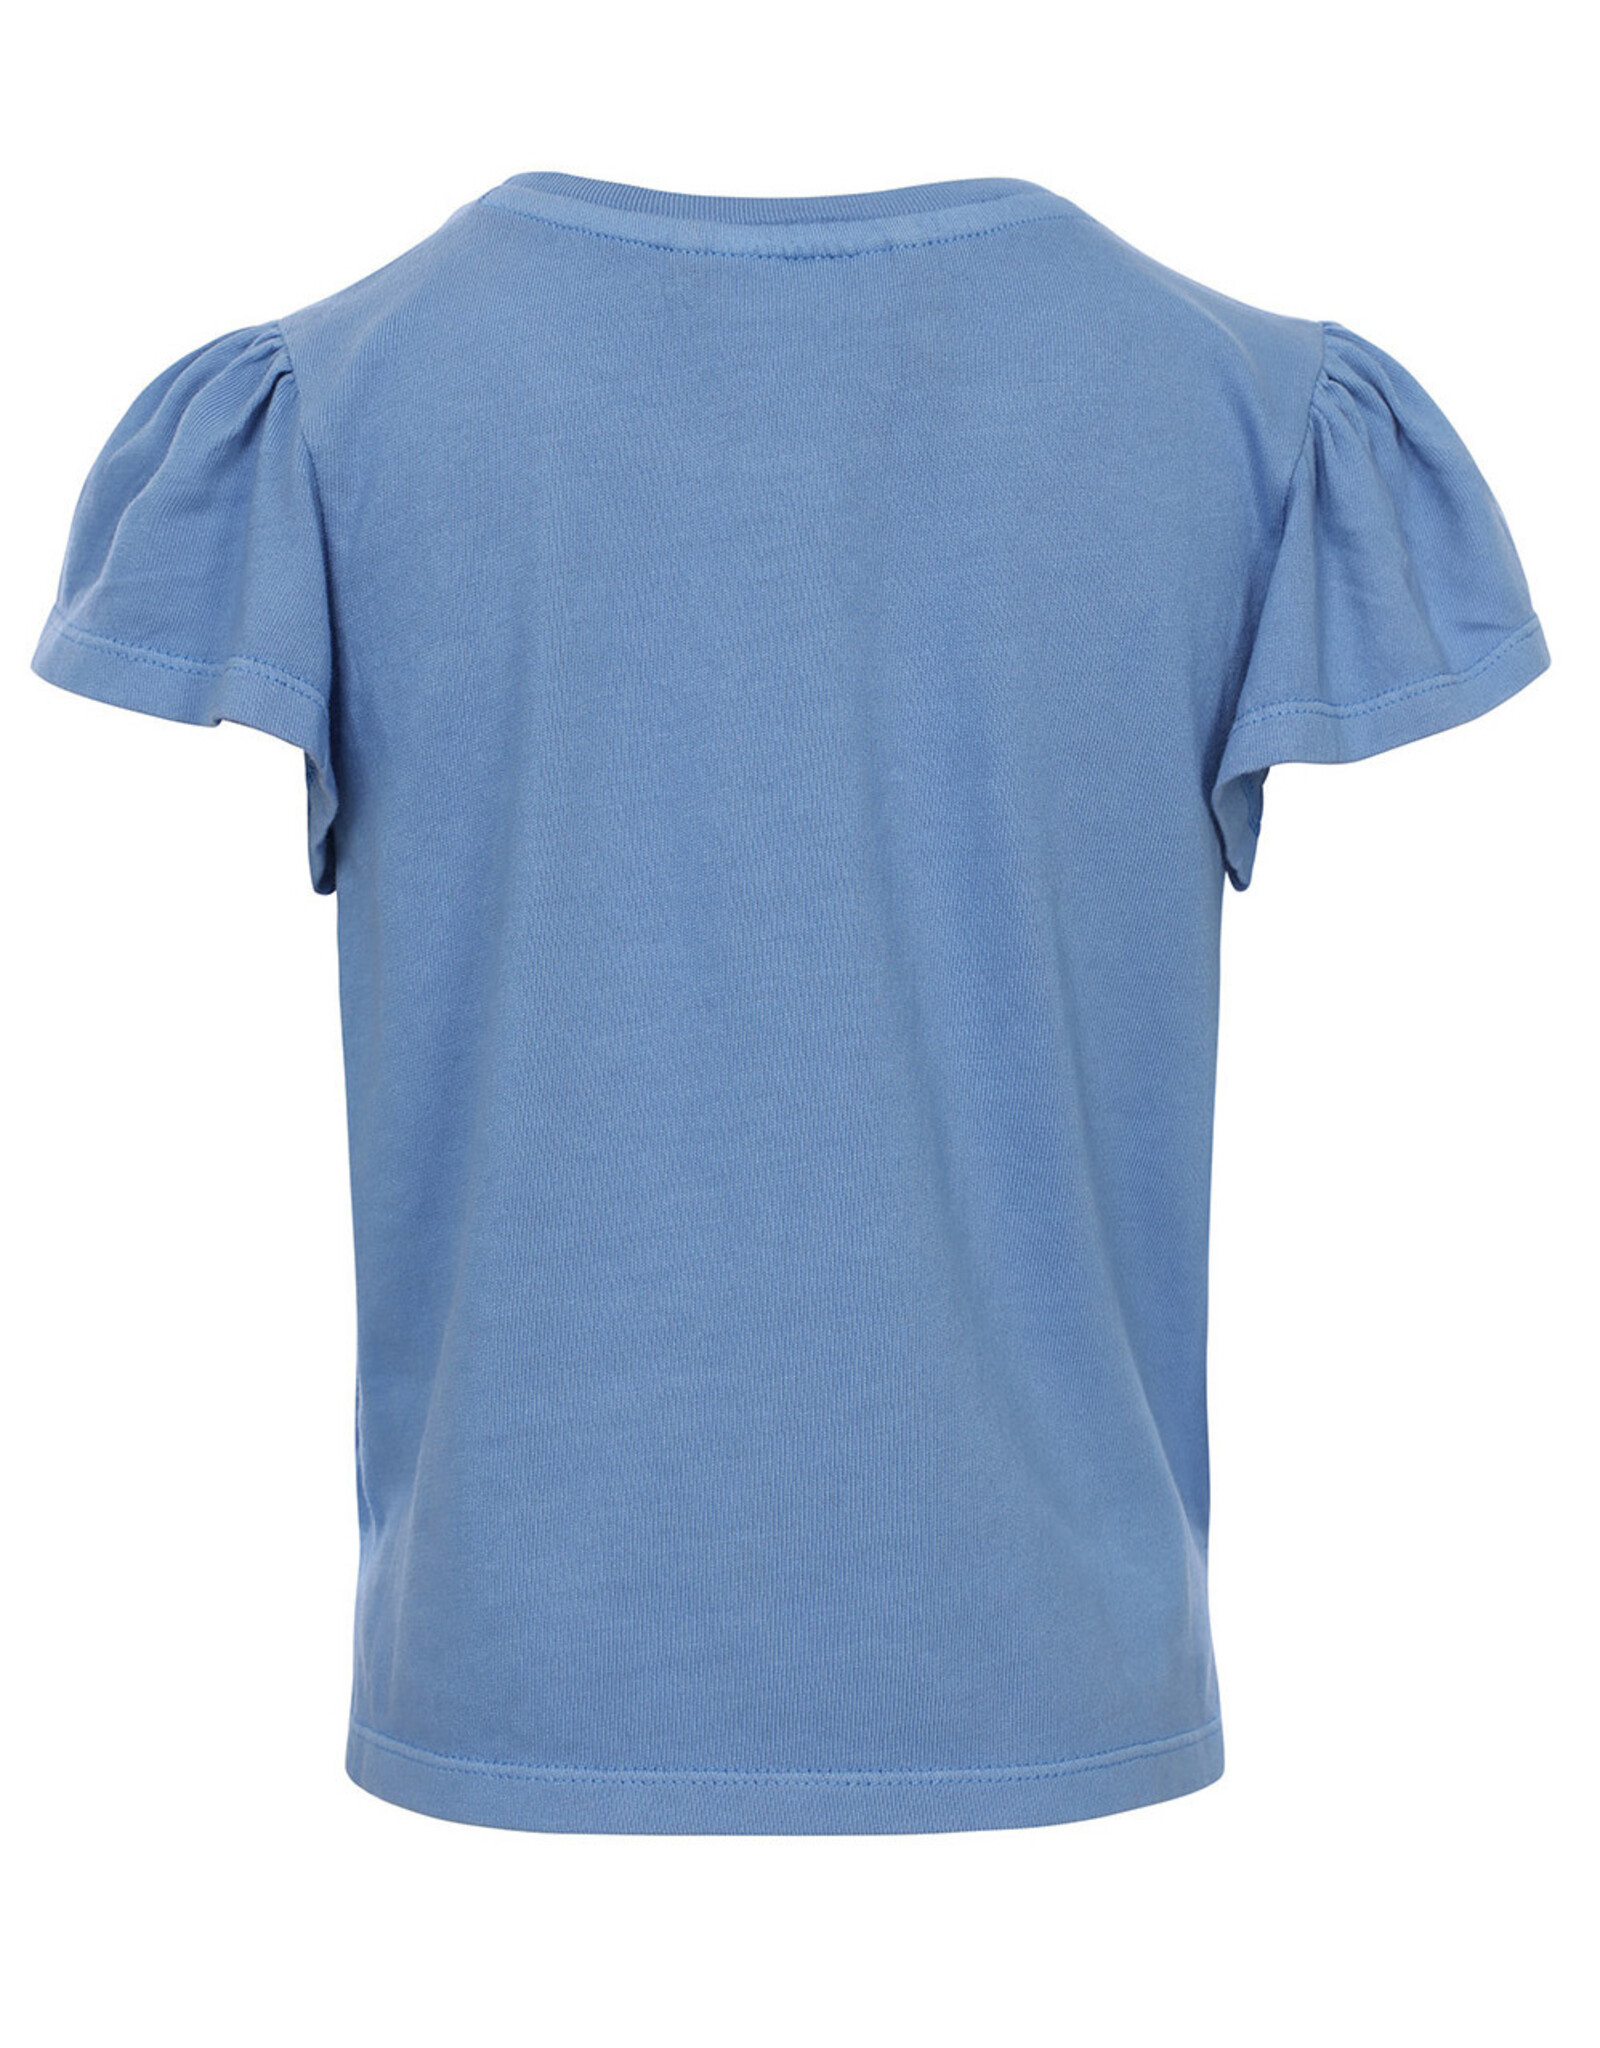 Looxs 10Sixteen T-shirt sky blue Z24